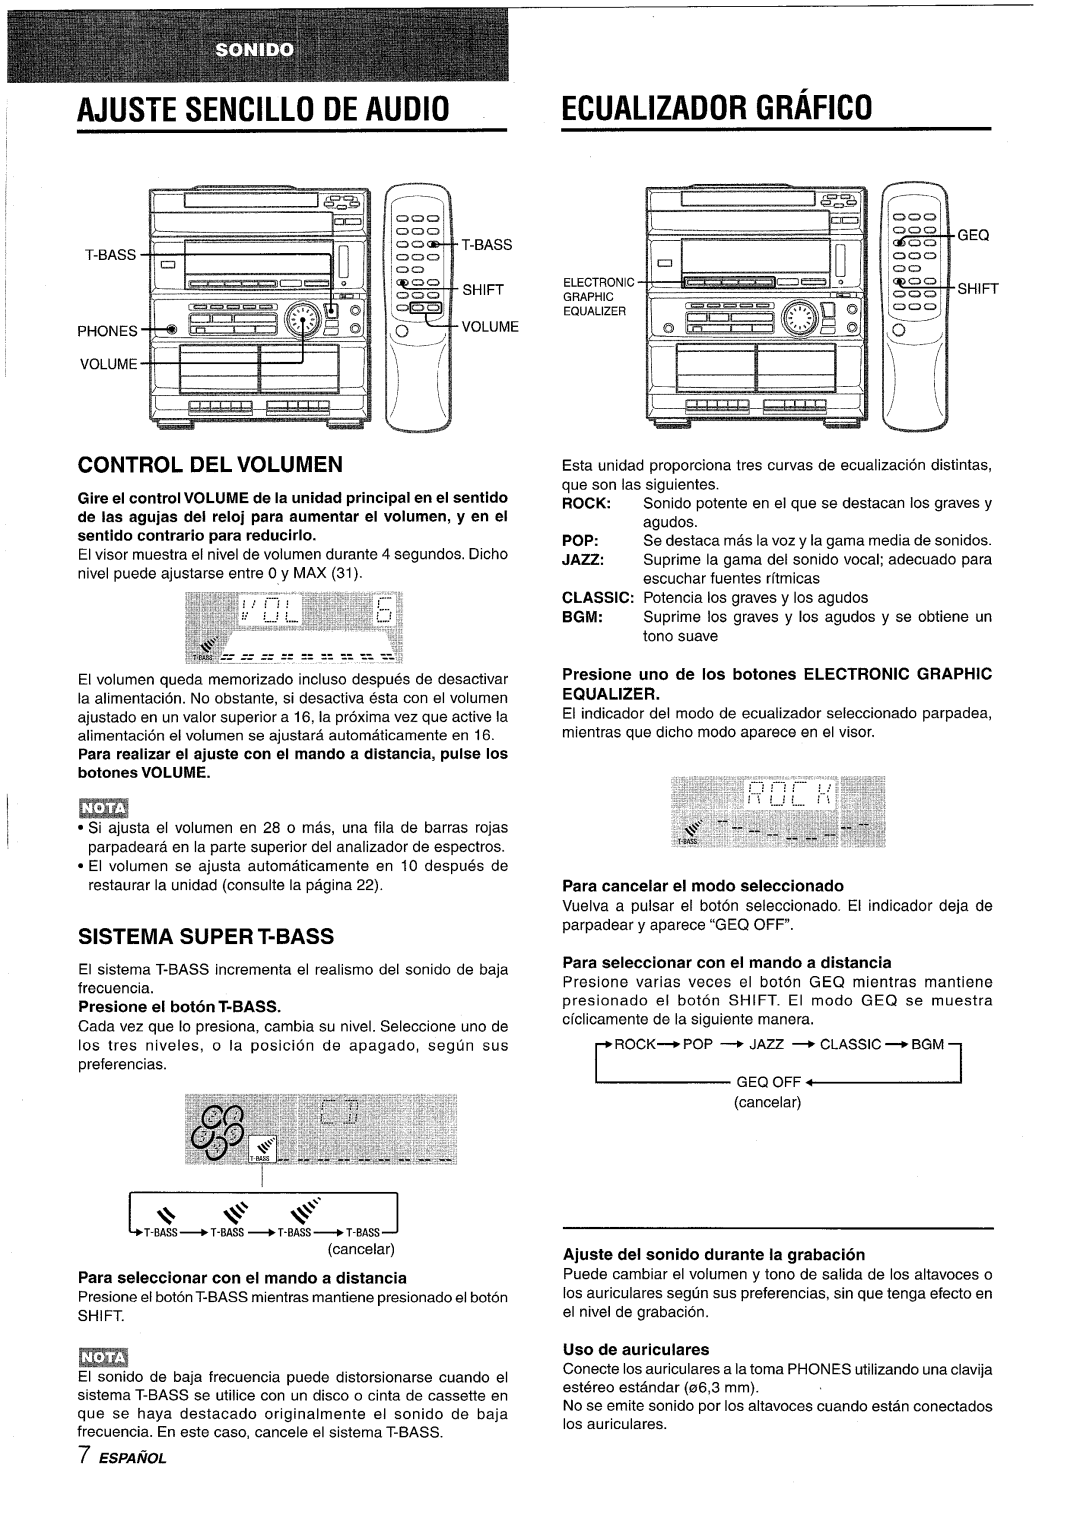 Sony CX-ZR525 Ajuste Sencillo De Audio, Ecualizador Grafico, Control Del Volumen, Sistema Super T-Bass, Uso de auriculares 